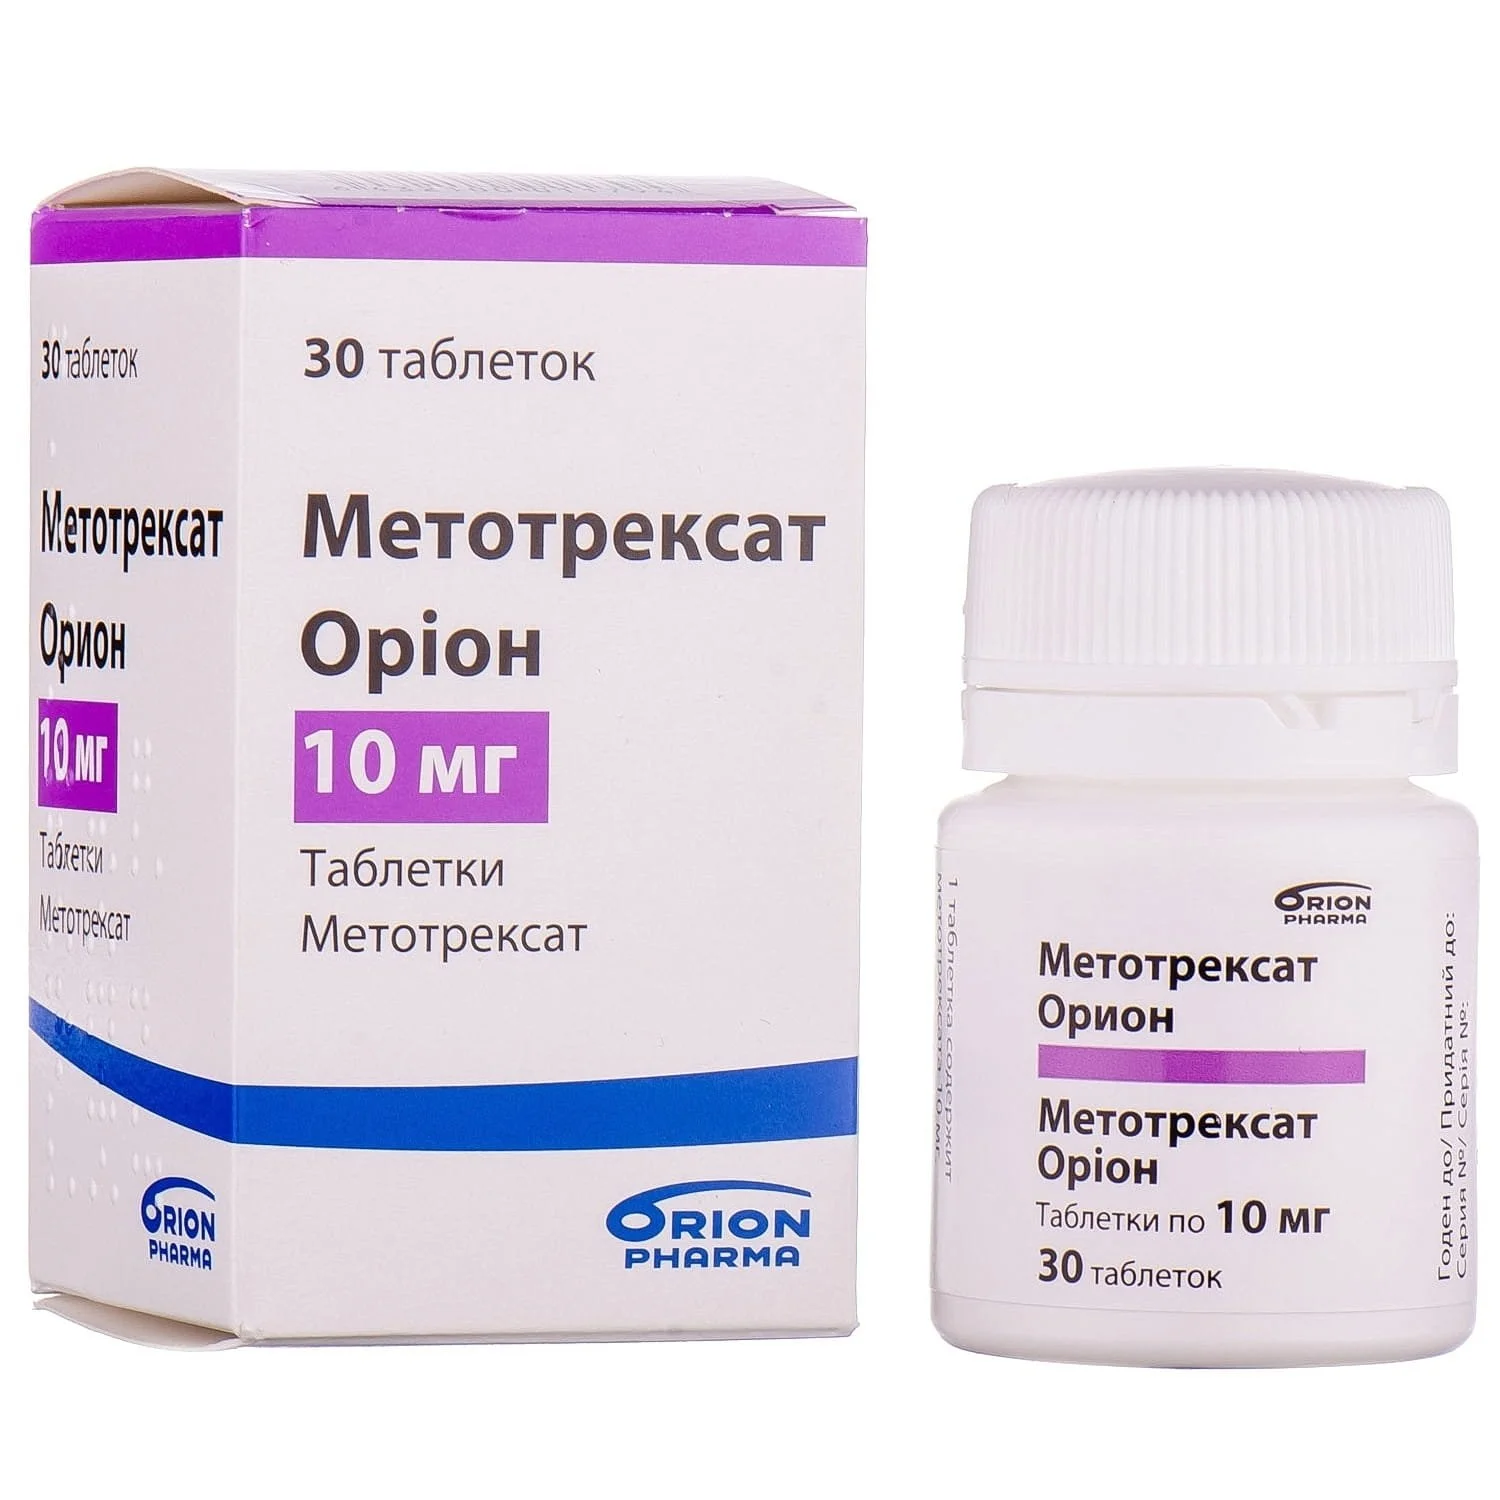 Как принимать метотрексат в таблетках. Метотрексат таблетки 2.5 мг. Метотрексат Орион 2.5 мг. Таблетки Метотрексат Орион 10 мг. Метотрексат 30 мг.